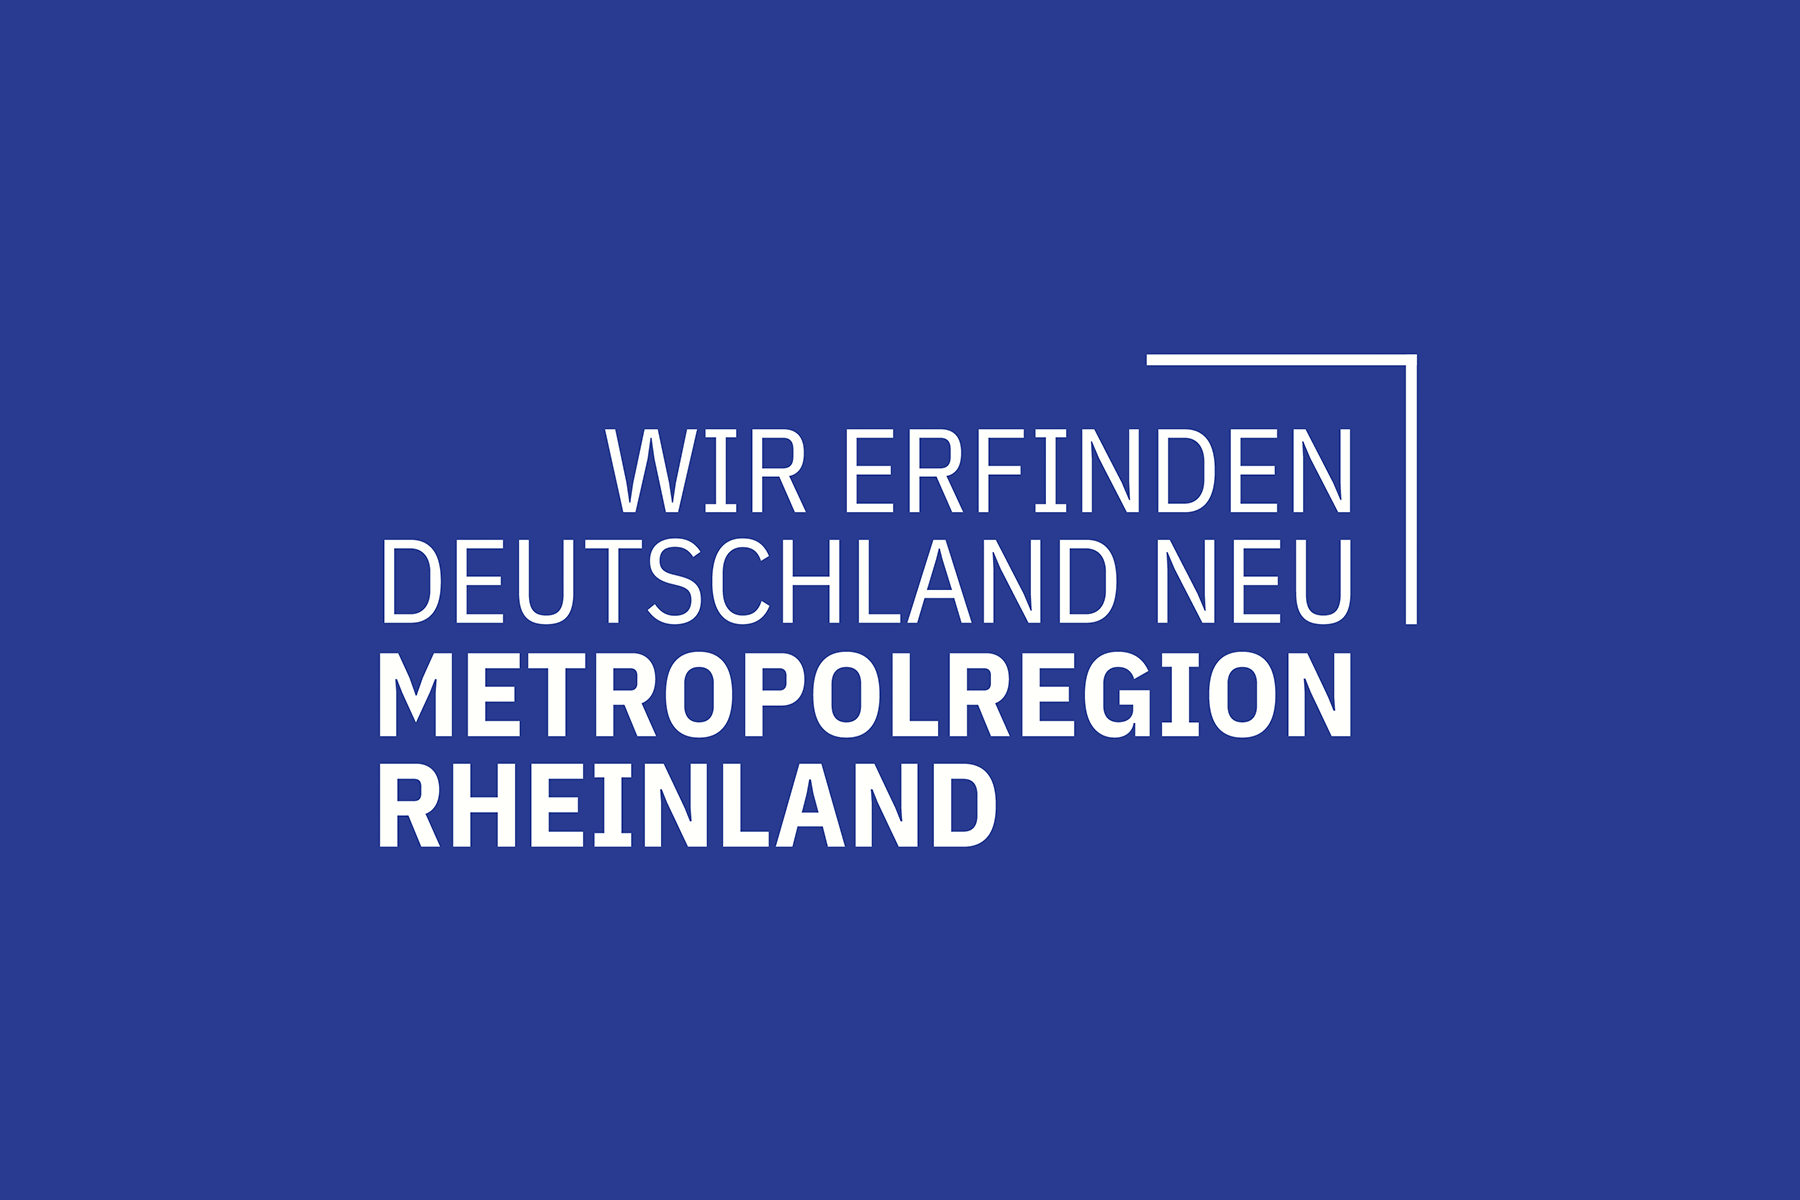 (c) Metropolregion-rheinland.de